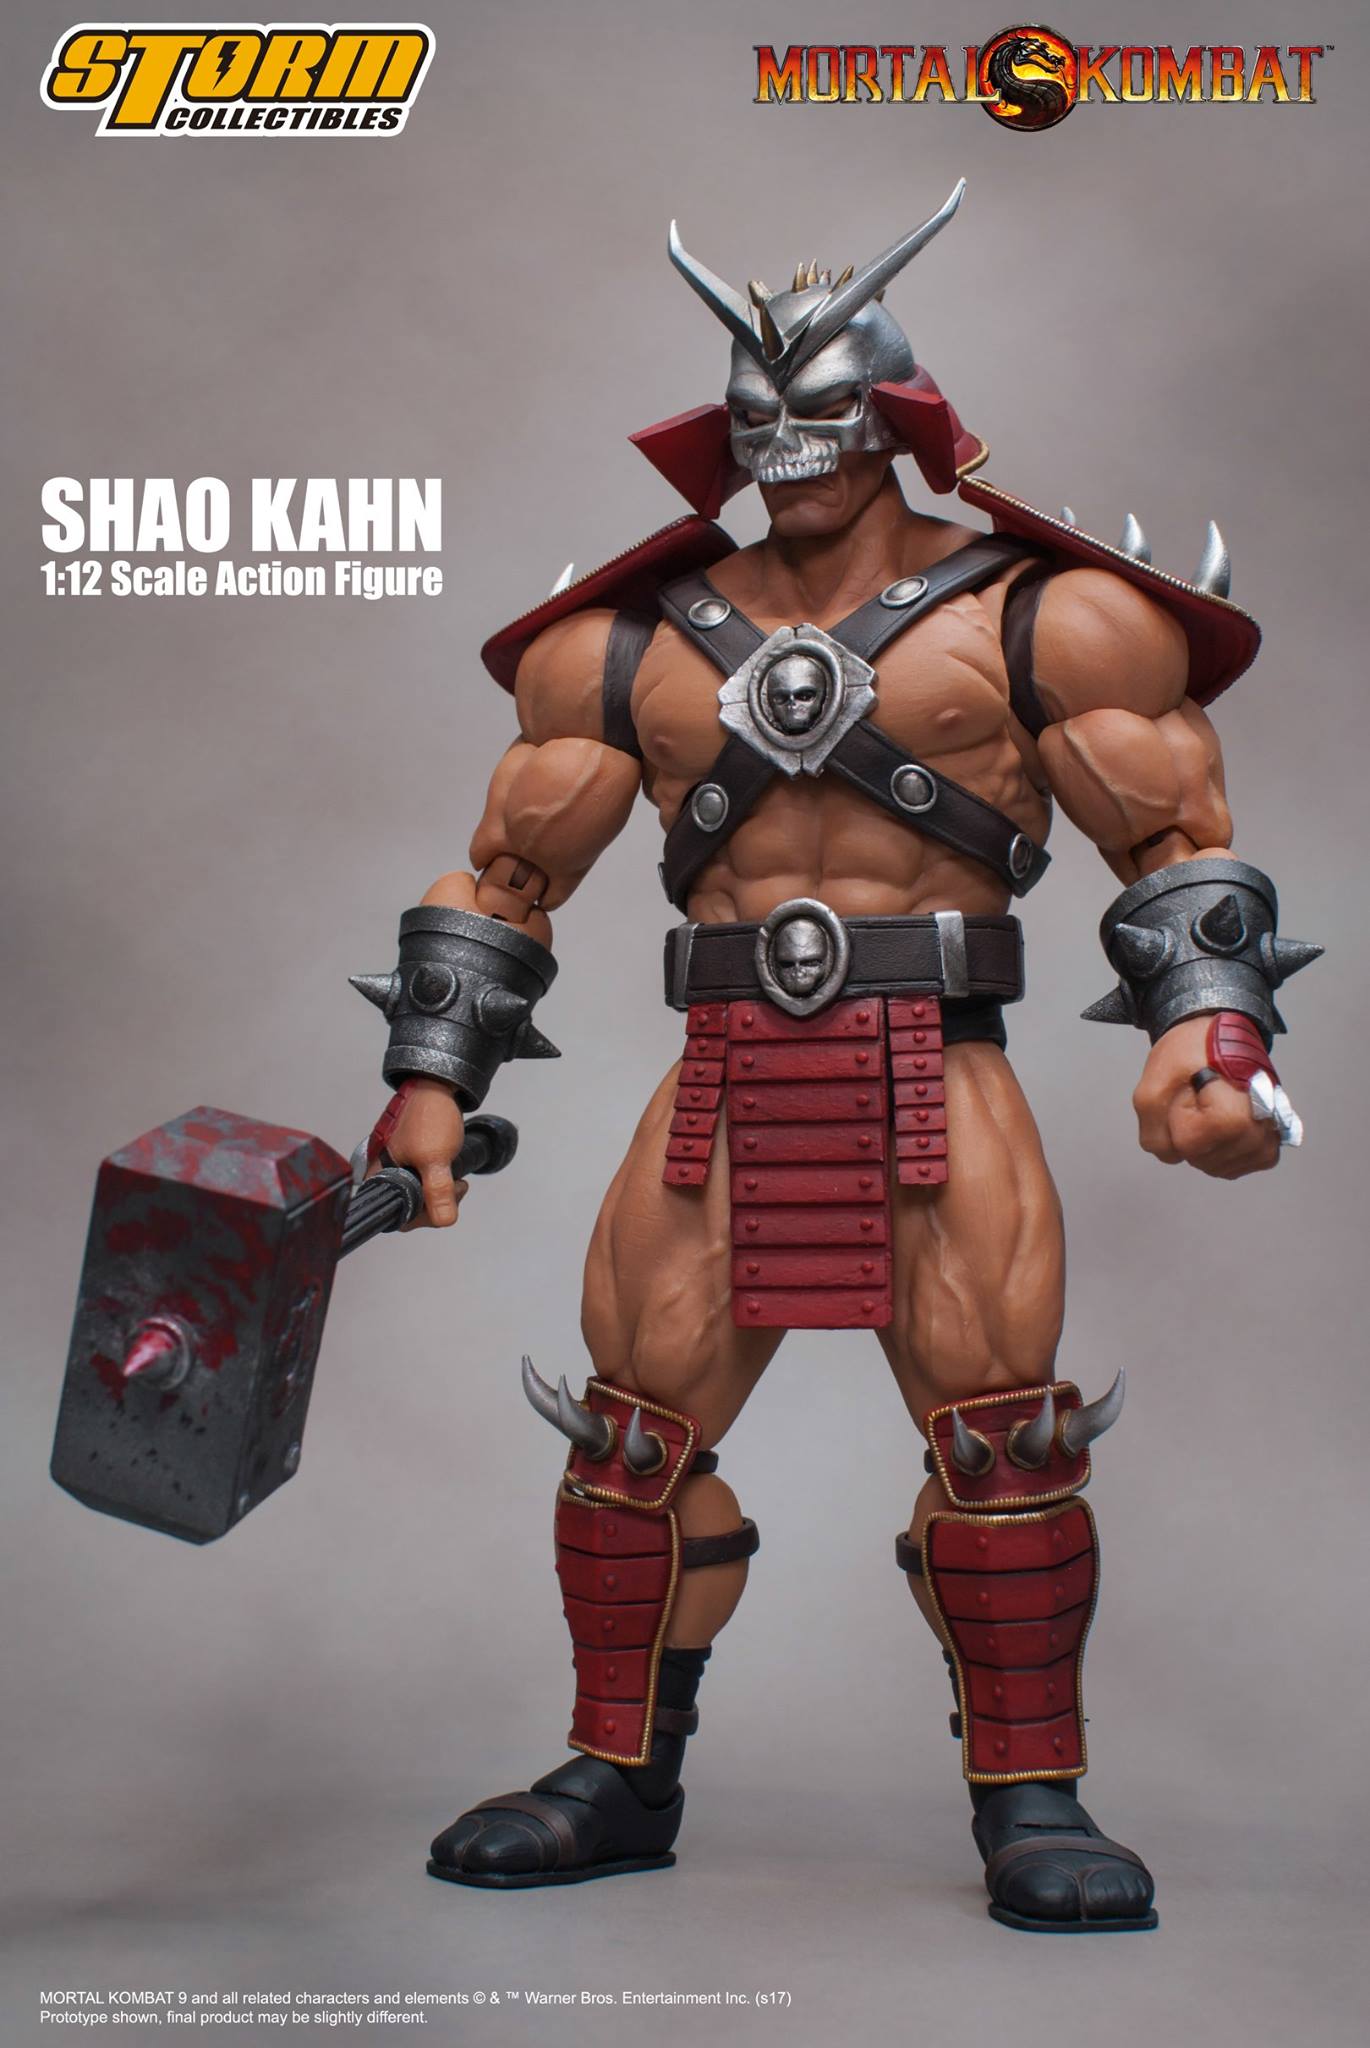 Storm-Mortal-Kombat-Shao-Kahn-008.jpg